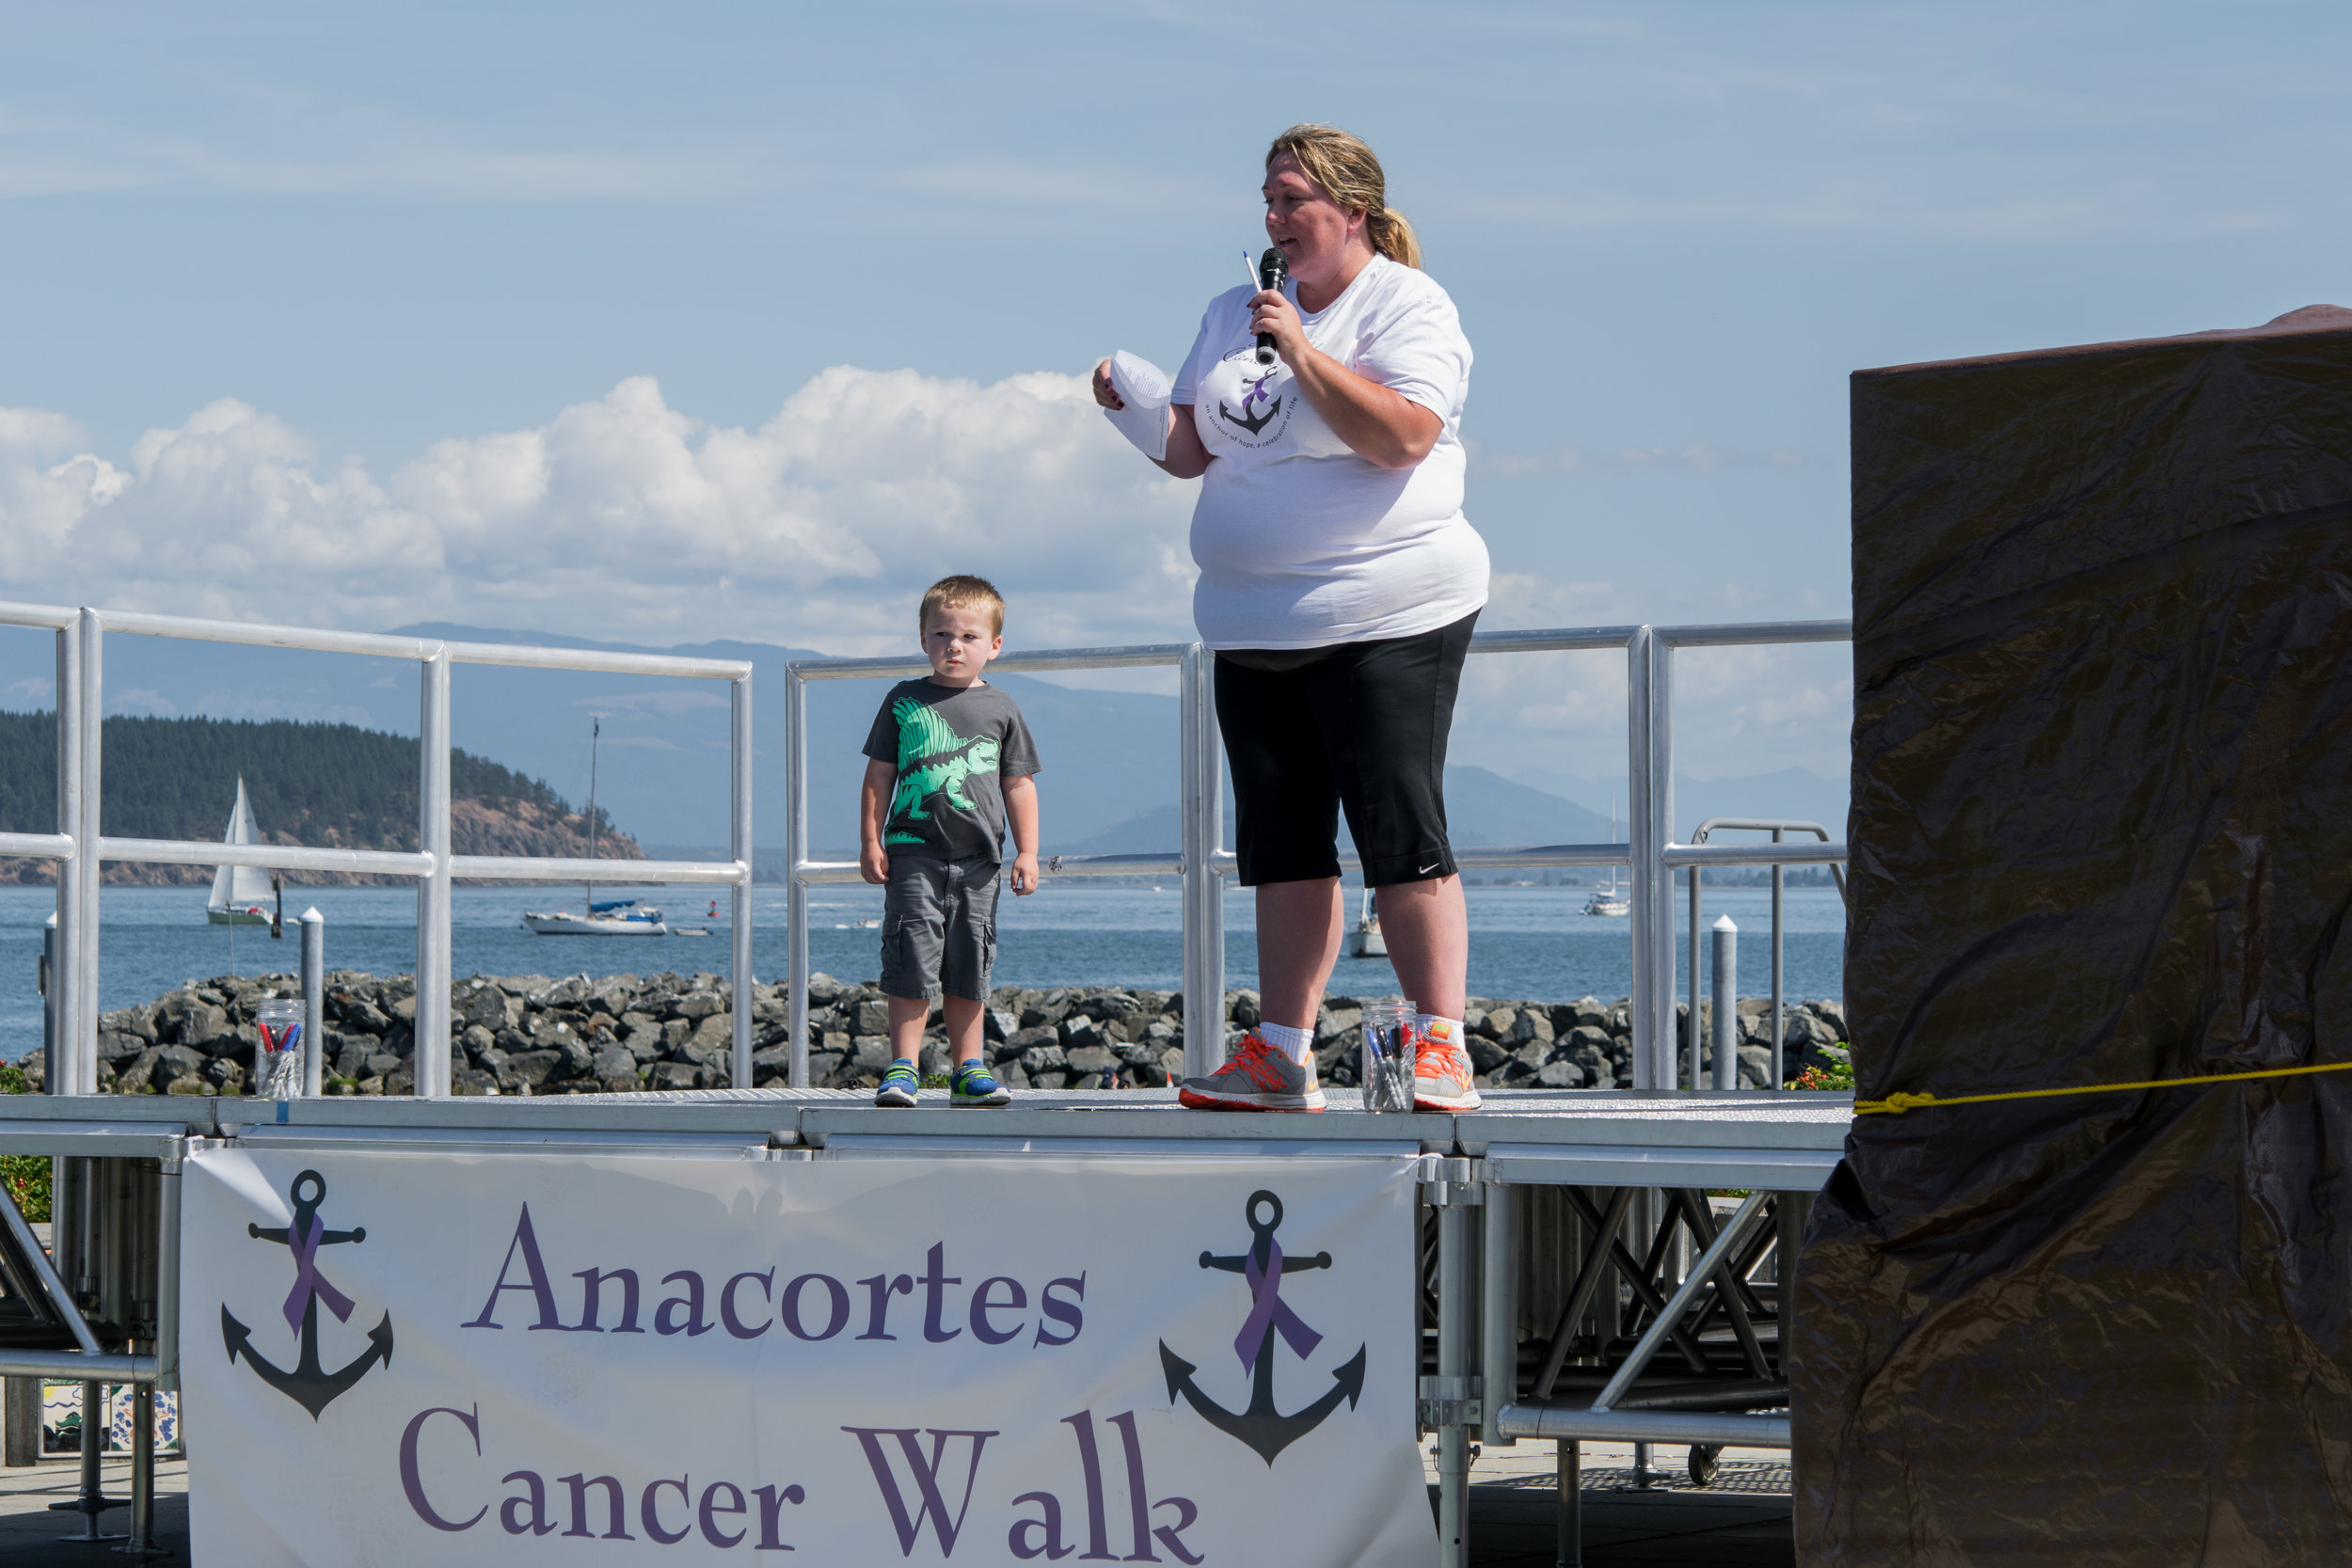 Anacortes Cancer Walk-7810.jpg